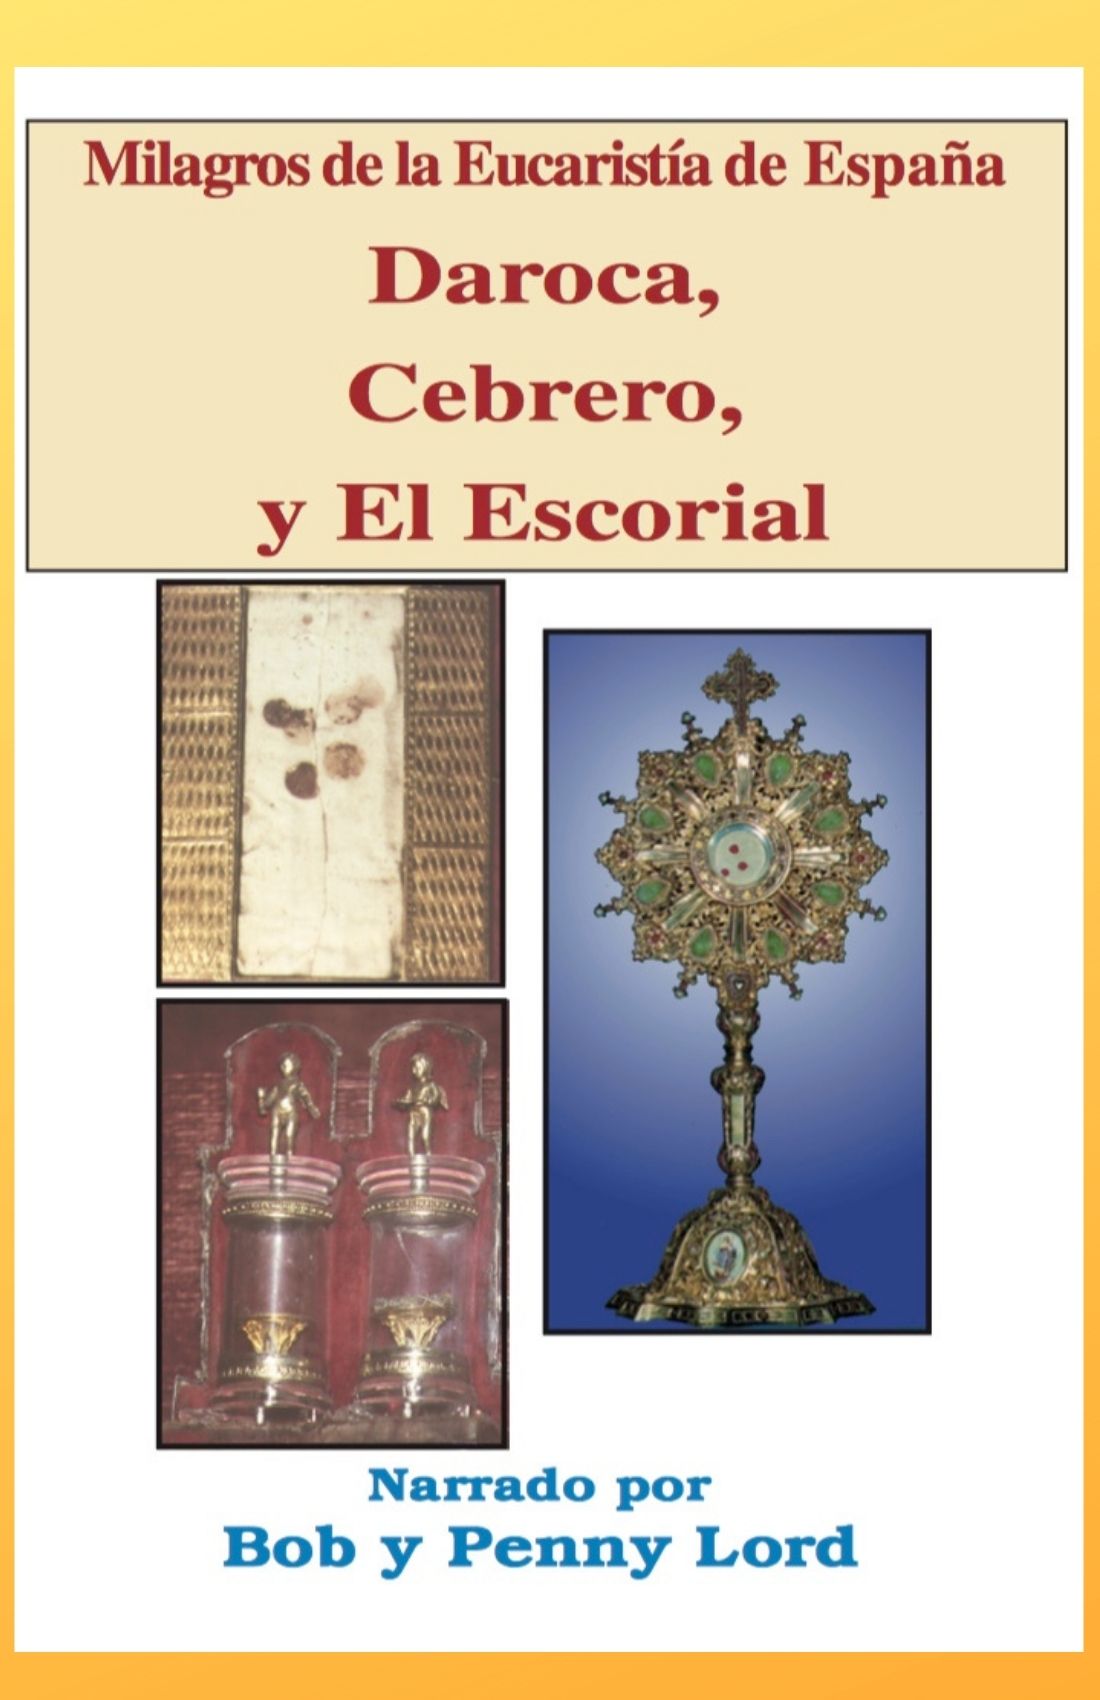 Milagros de la Eucaristía de España - Bob and Penny Lord